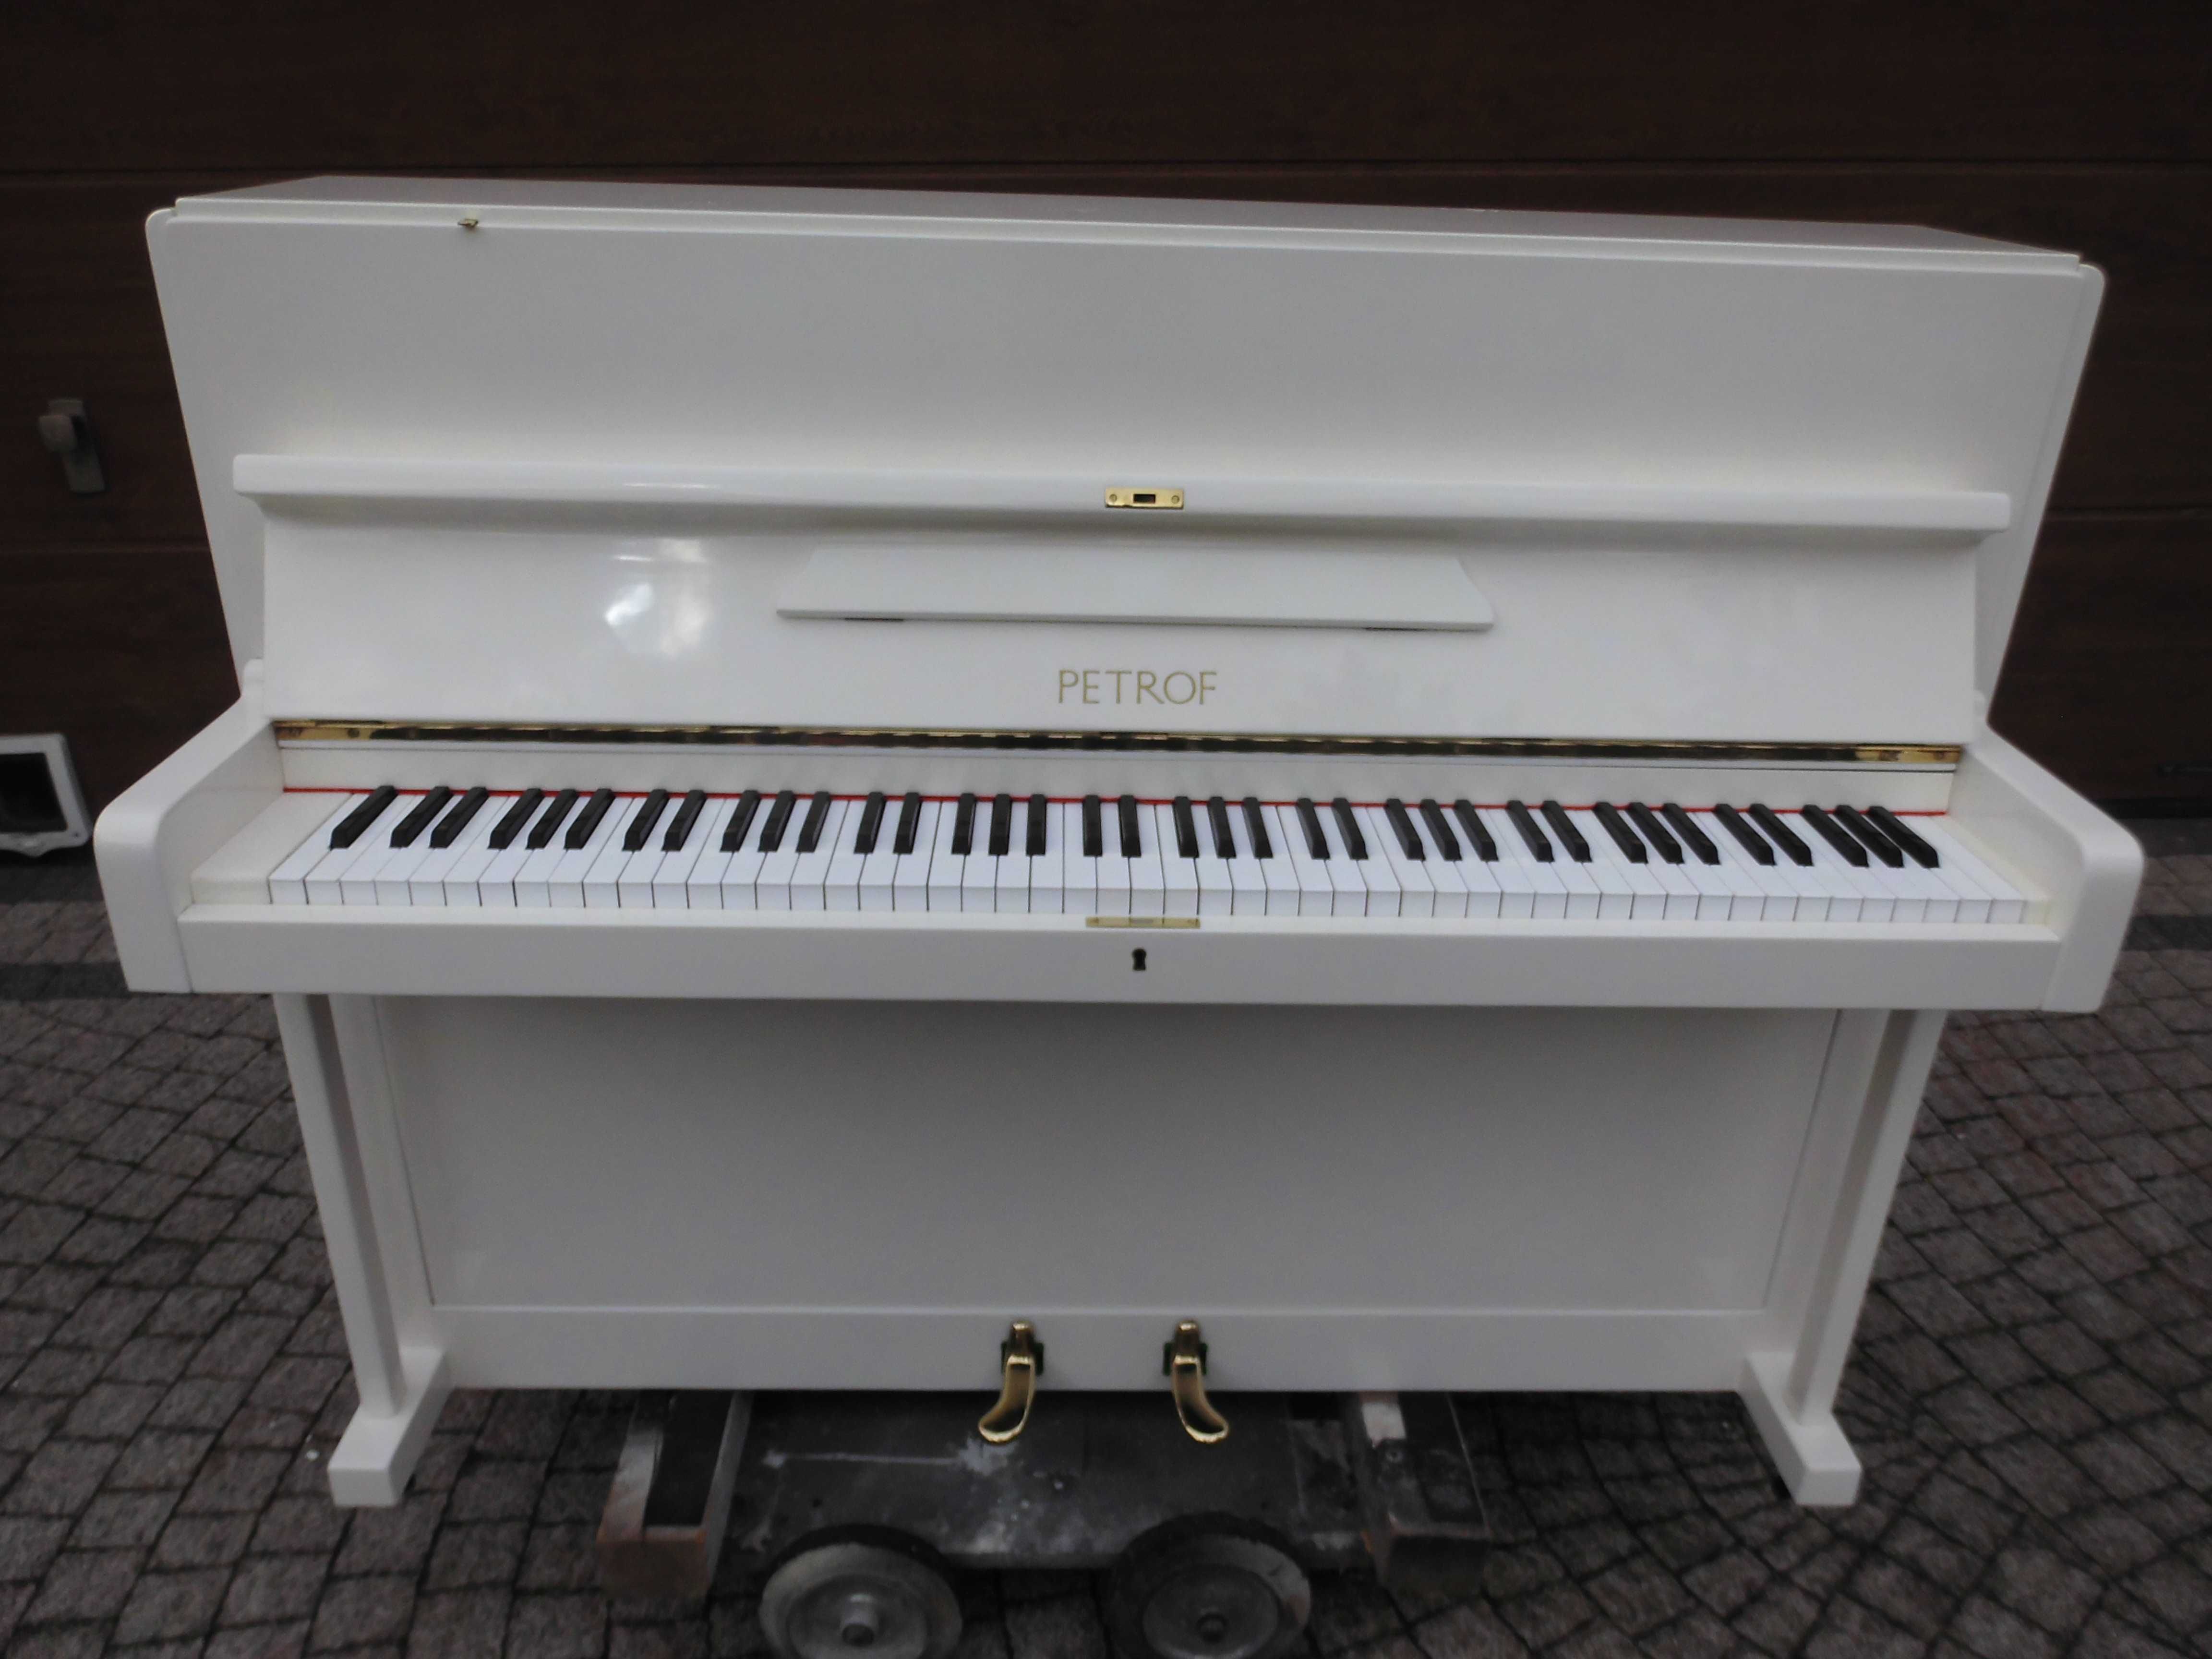 Pianino Czeskie Petrof M116 w białym poliestrze na gotowo z transporte